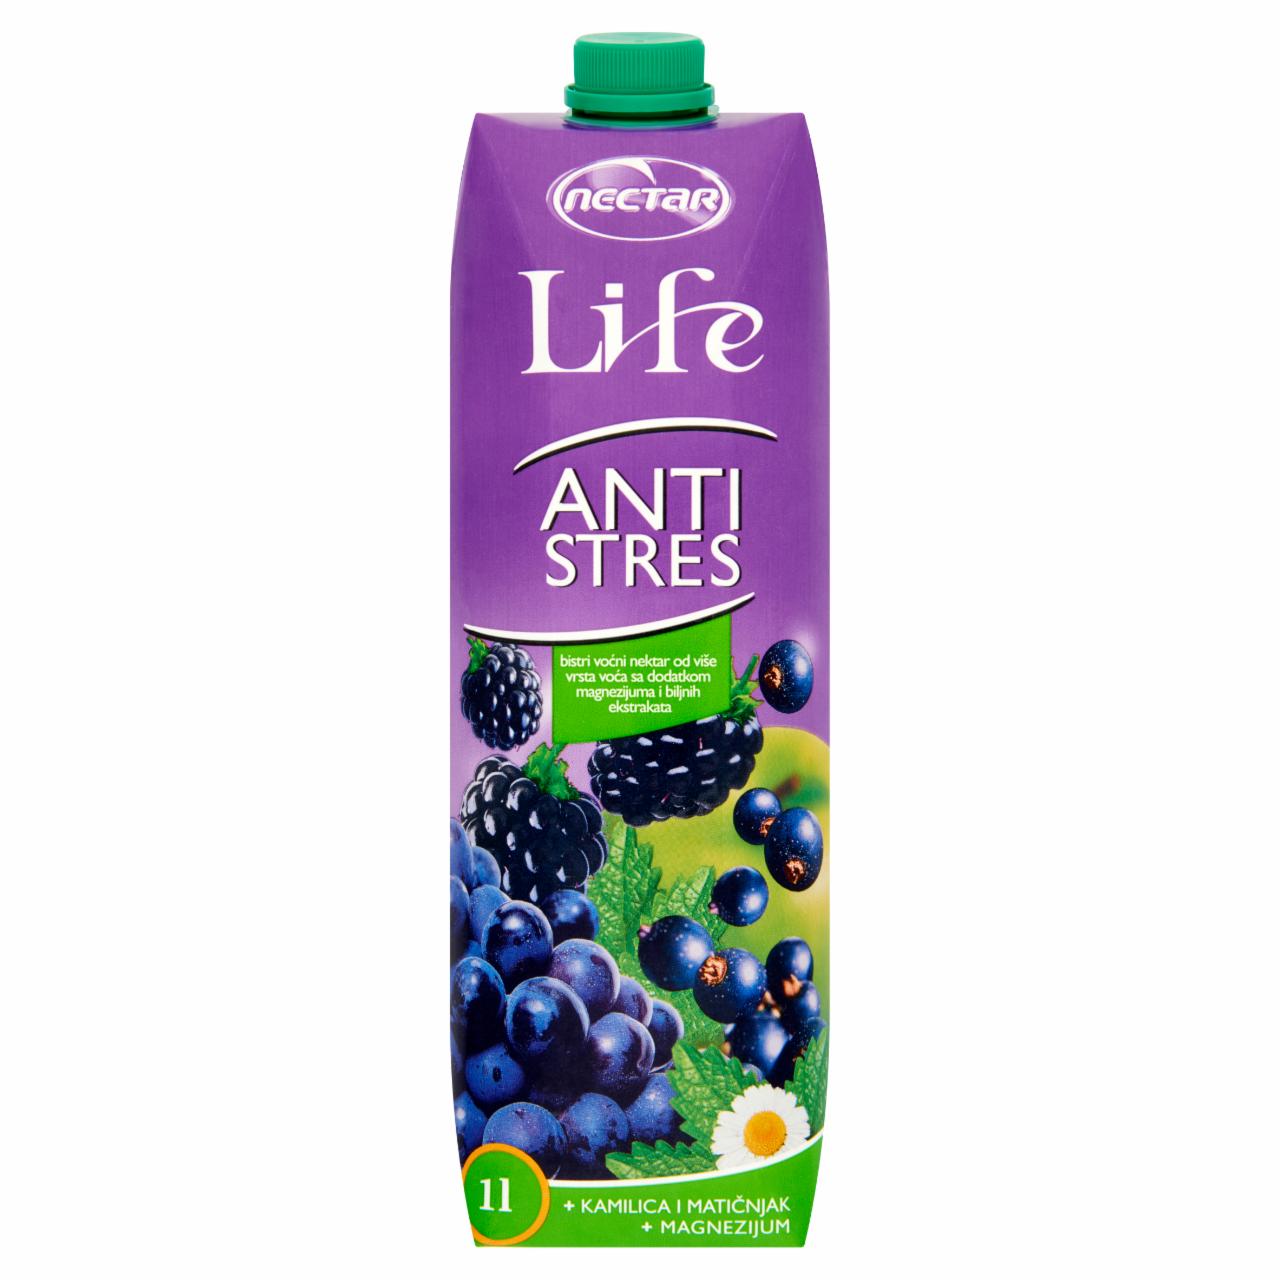 Képek - Nectar Life Antistressz 2 szűrt alma, szeder, szőlő, feketeribizli nektár 1 l